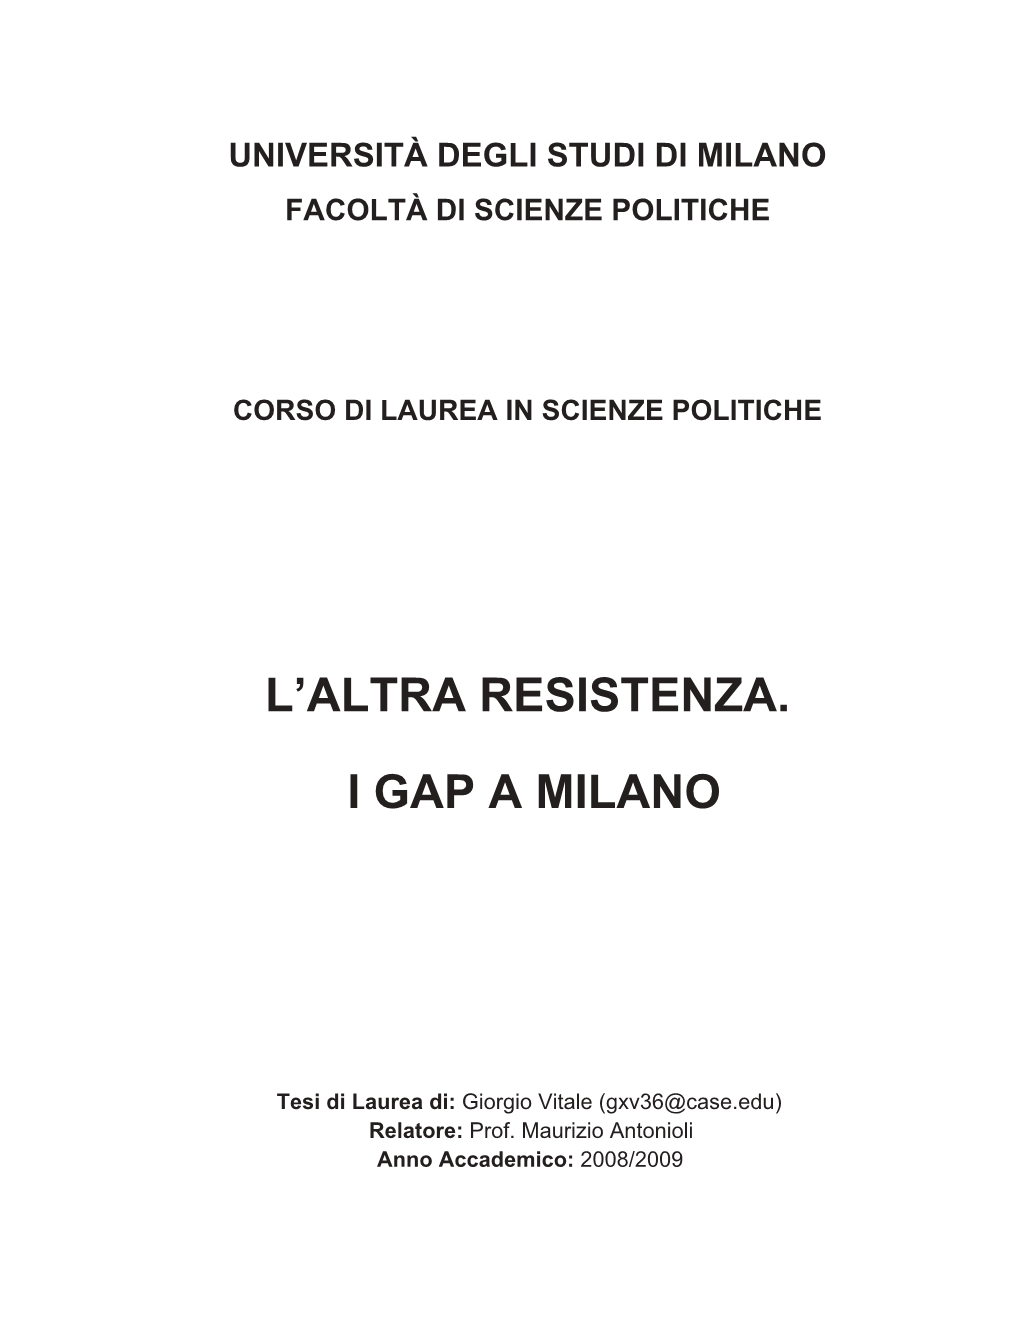 L'altra Resistenza. I Gap a Milano